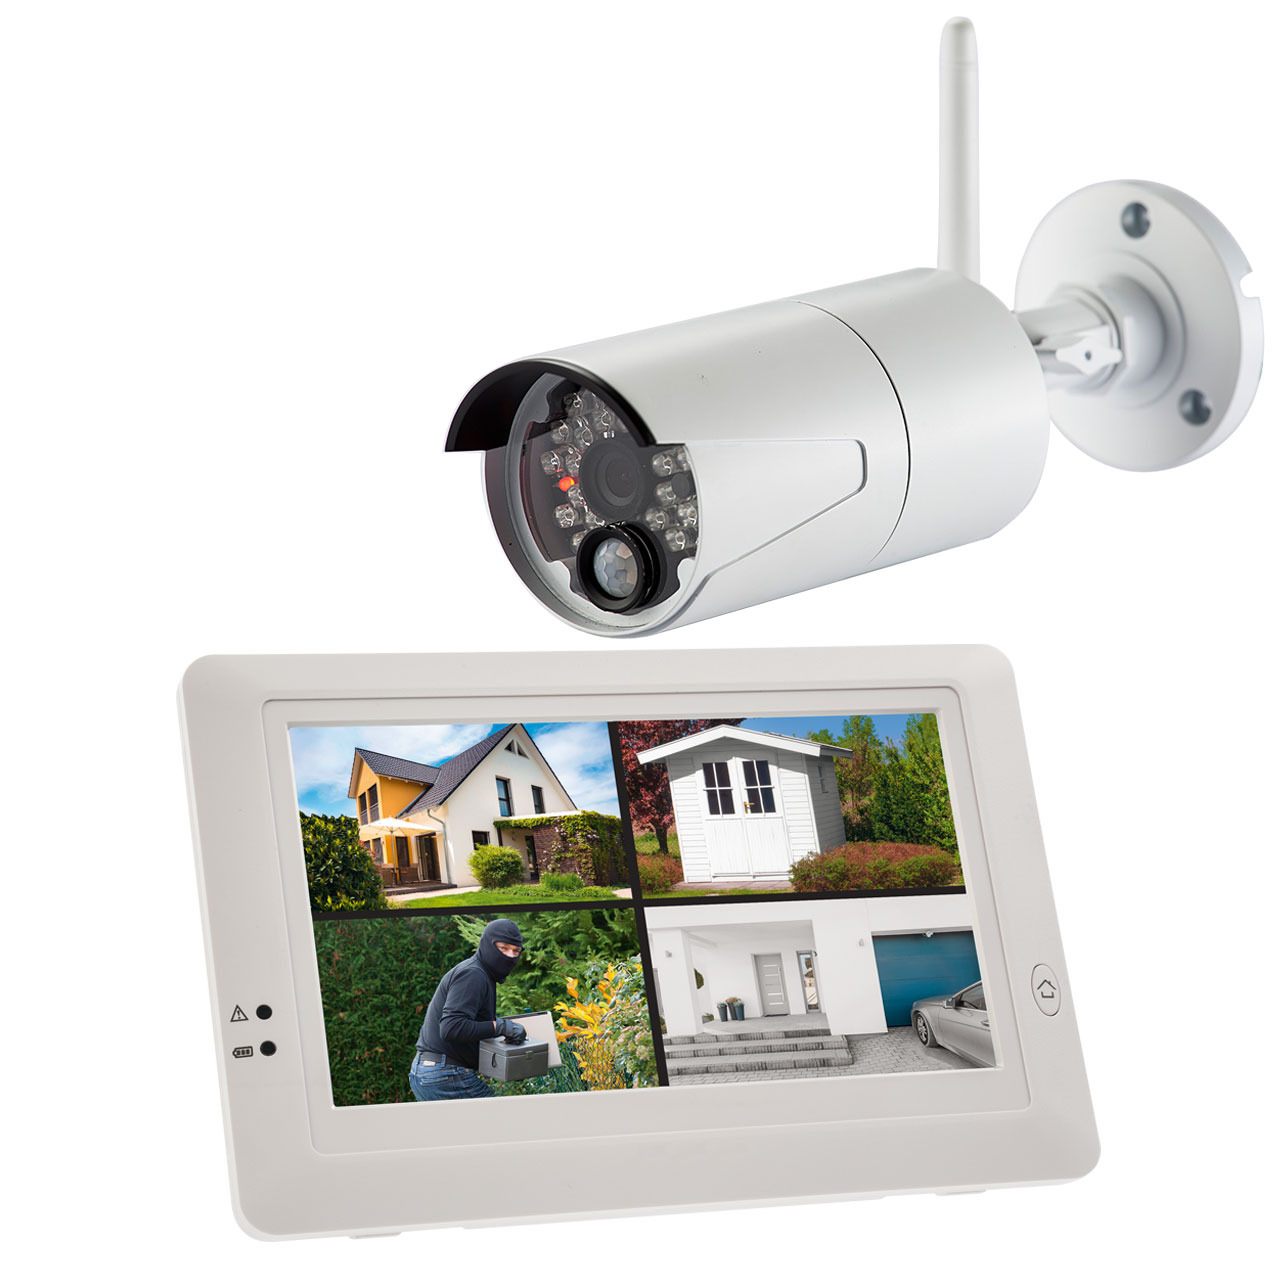 ELV Funk-Kamerasystem KS200 HD- 2-4 GHz- App (iOS und Android)- HD (720p) unter Sicherheitstechnik